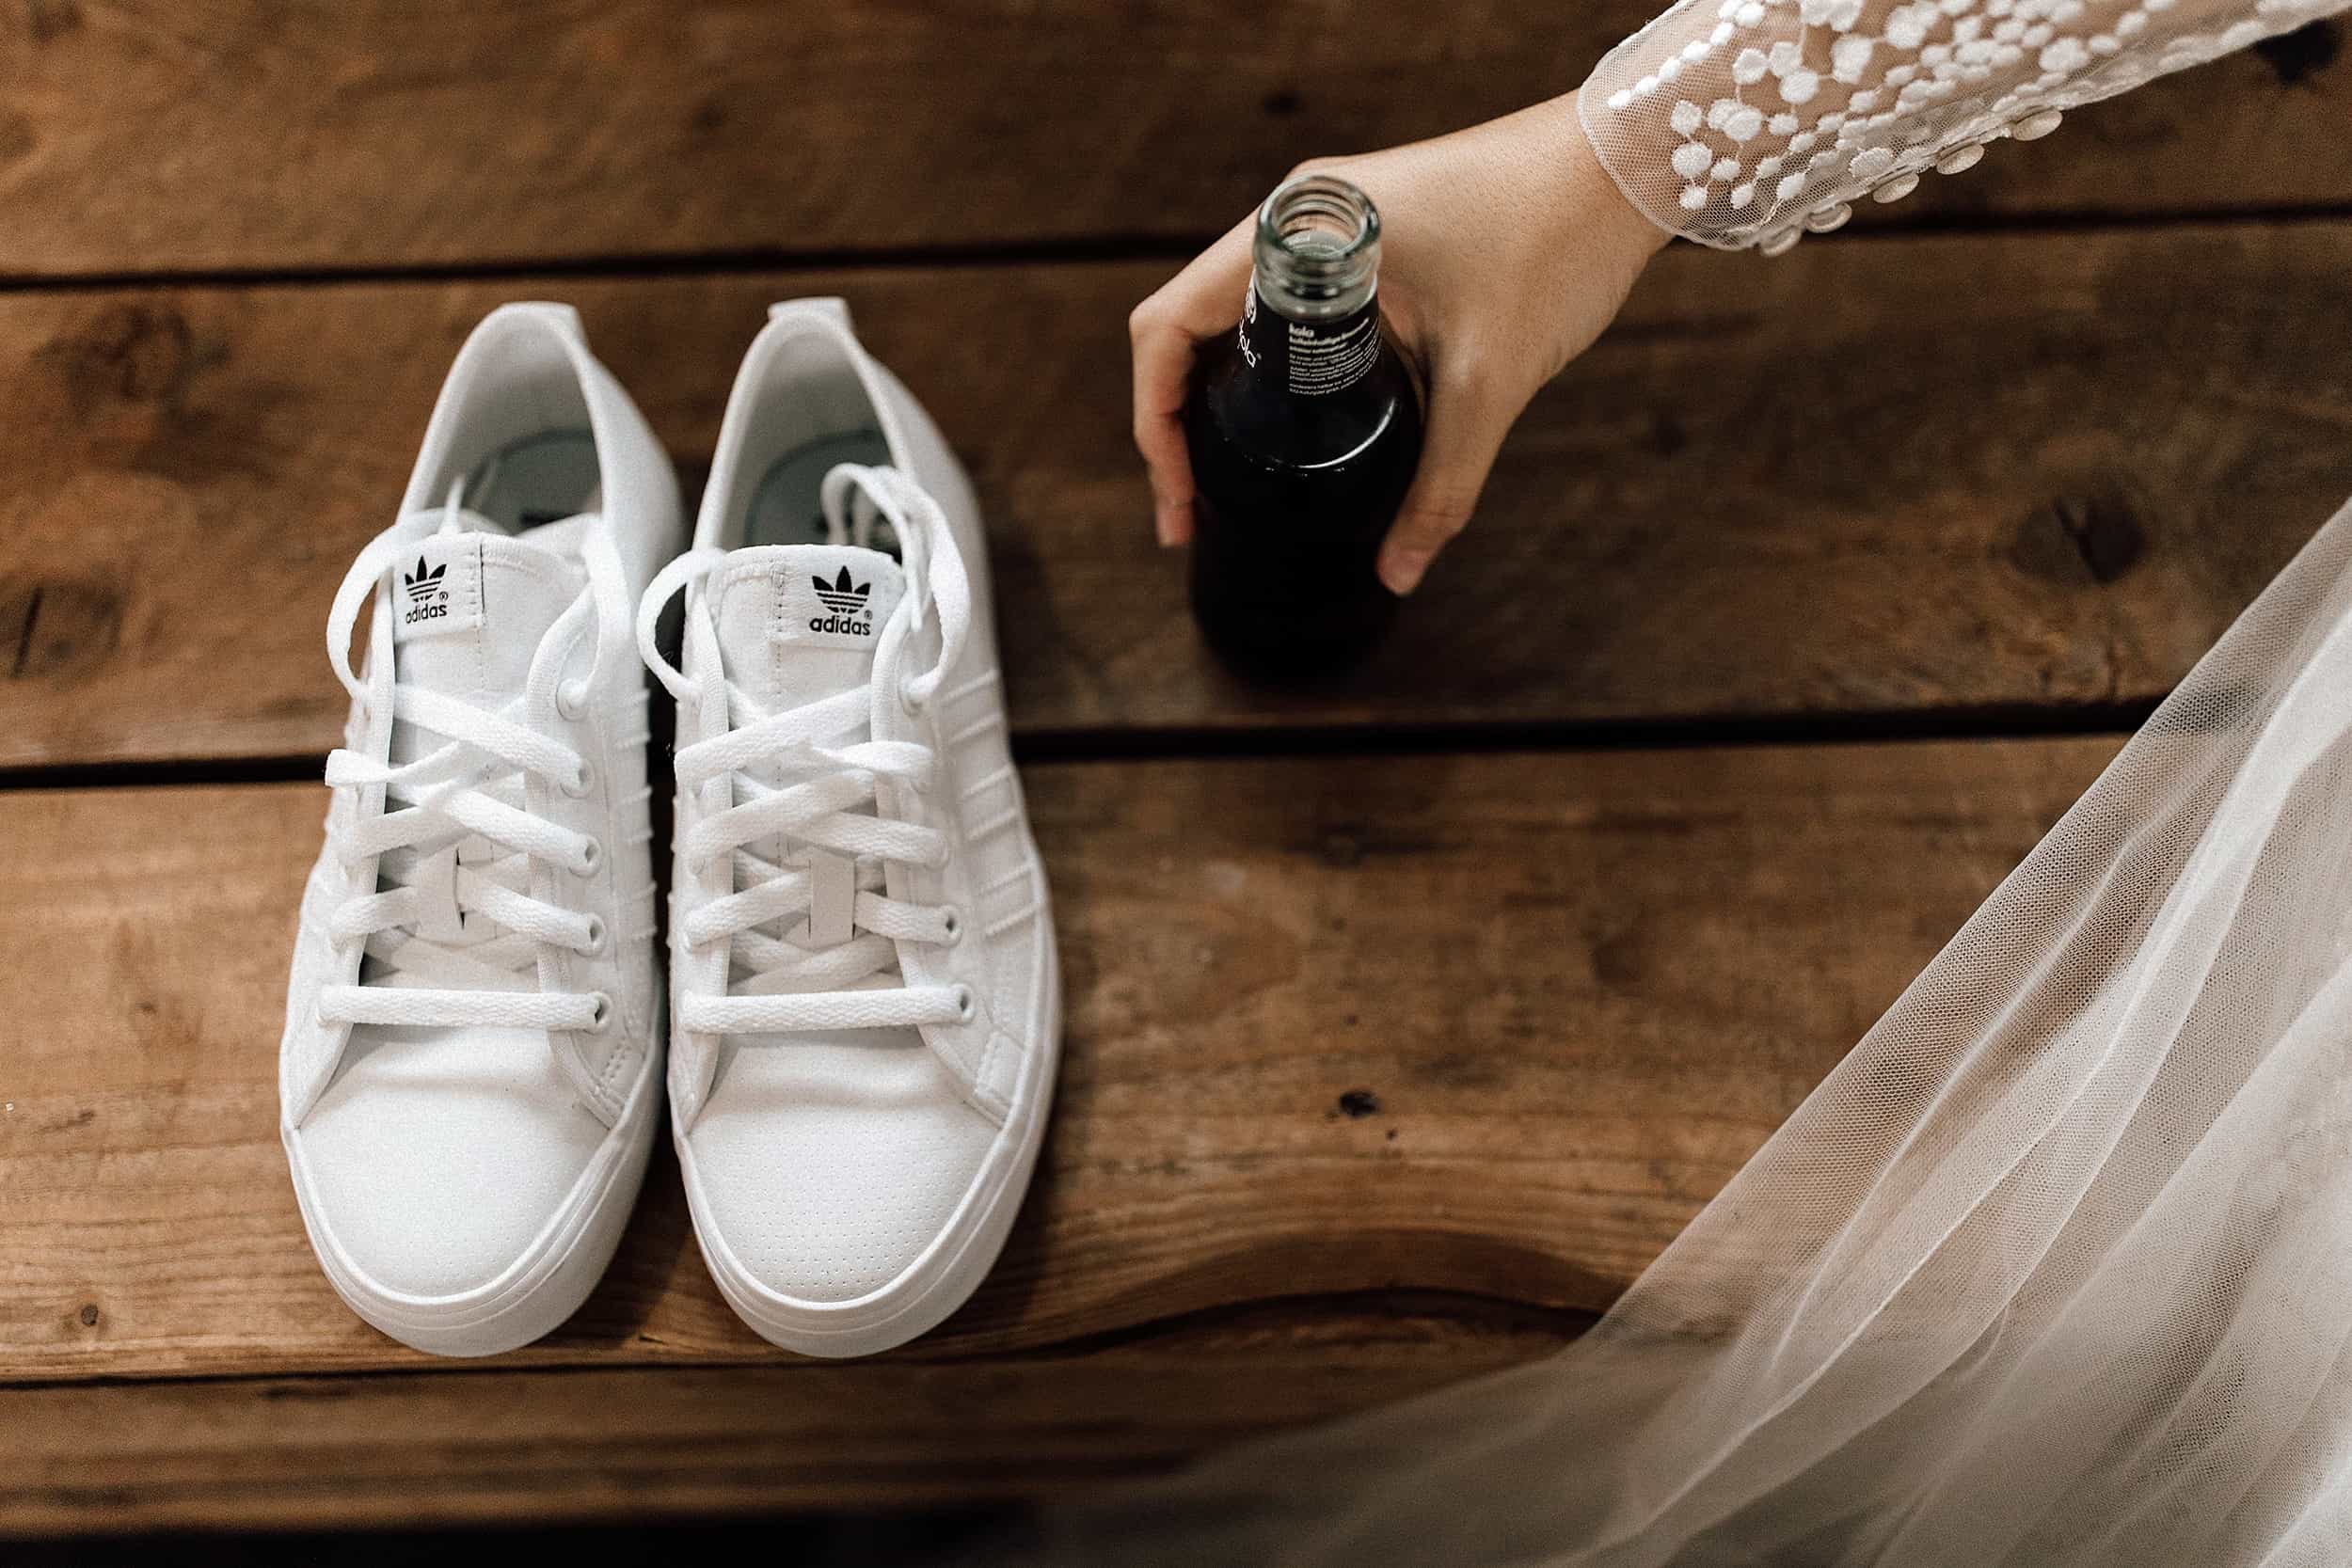 Hochzeitsfoto Getting Ready: Weiße Adidas Turnschuhe als coole Brautschuh Alternative